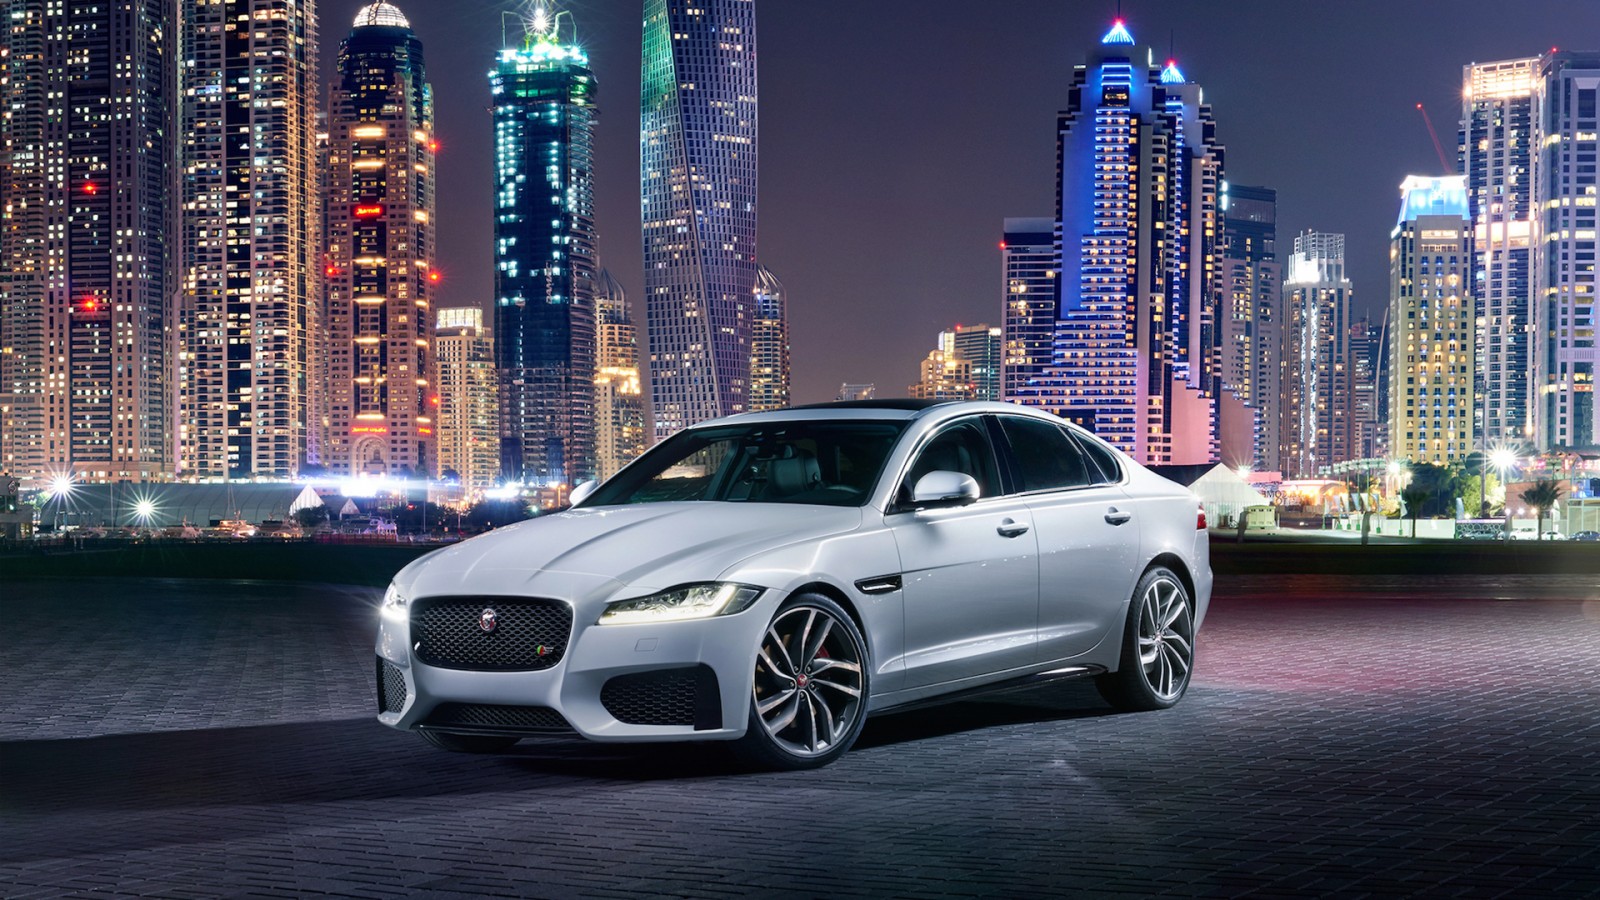 fond d'écran de voiture jaguar,véhicule terrestre,voiture,véhicule de luxe,véhicule,voiture de performance